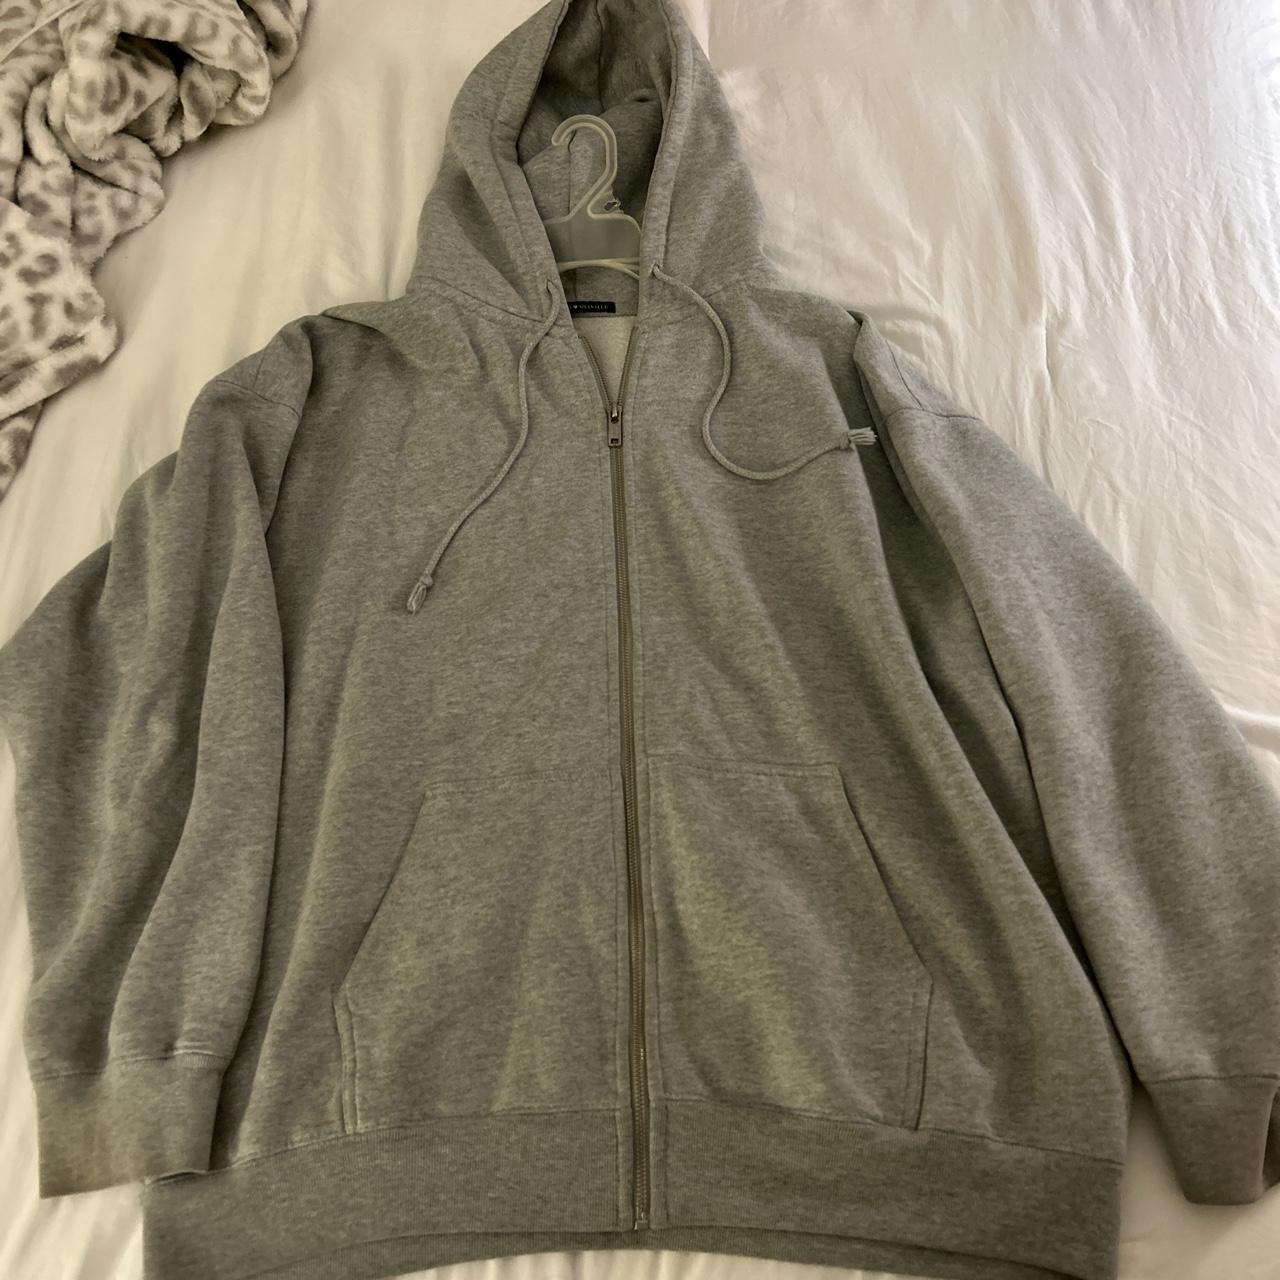 Brandy Melville Grey hoodie (long) - Depop